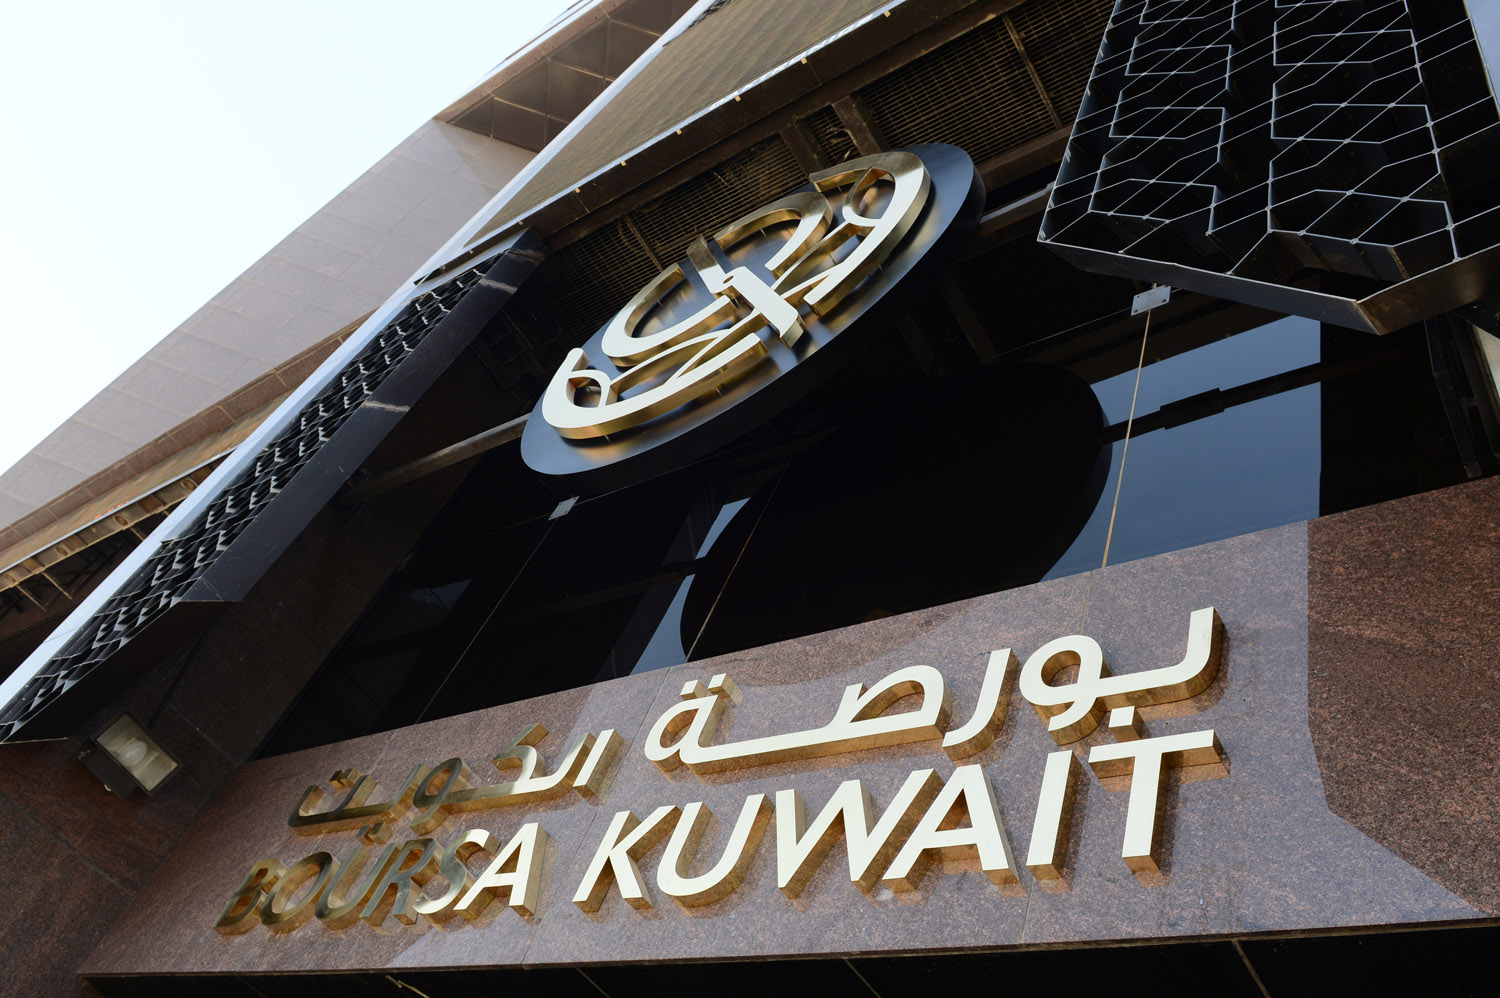 بورصة الكويت تغلق تعاملاتها على ارتفاع المؤشر العام 6ر20 نقطة ليبلغ 72ر7861 نقطة بنسبة ارتفاع 26ر0 في المئة وبقيمة 9ر66 مليون دينار                                                                                                                       